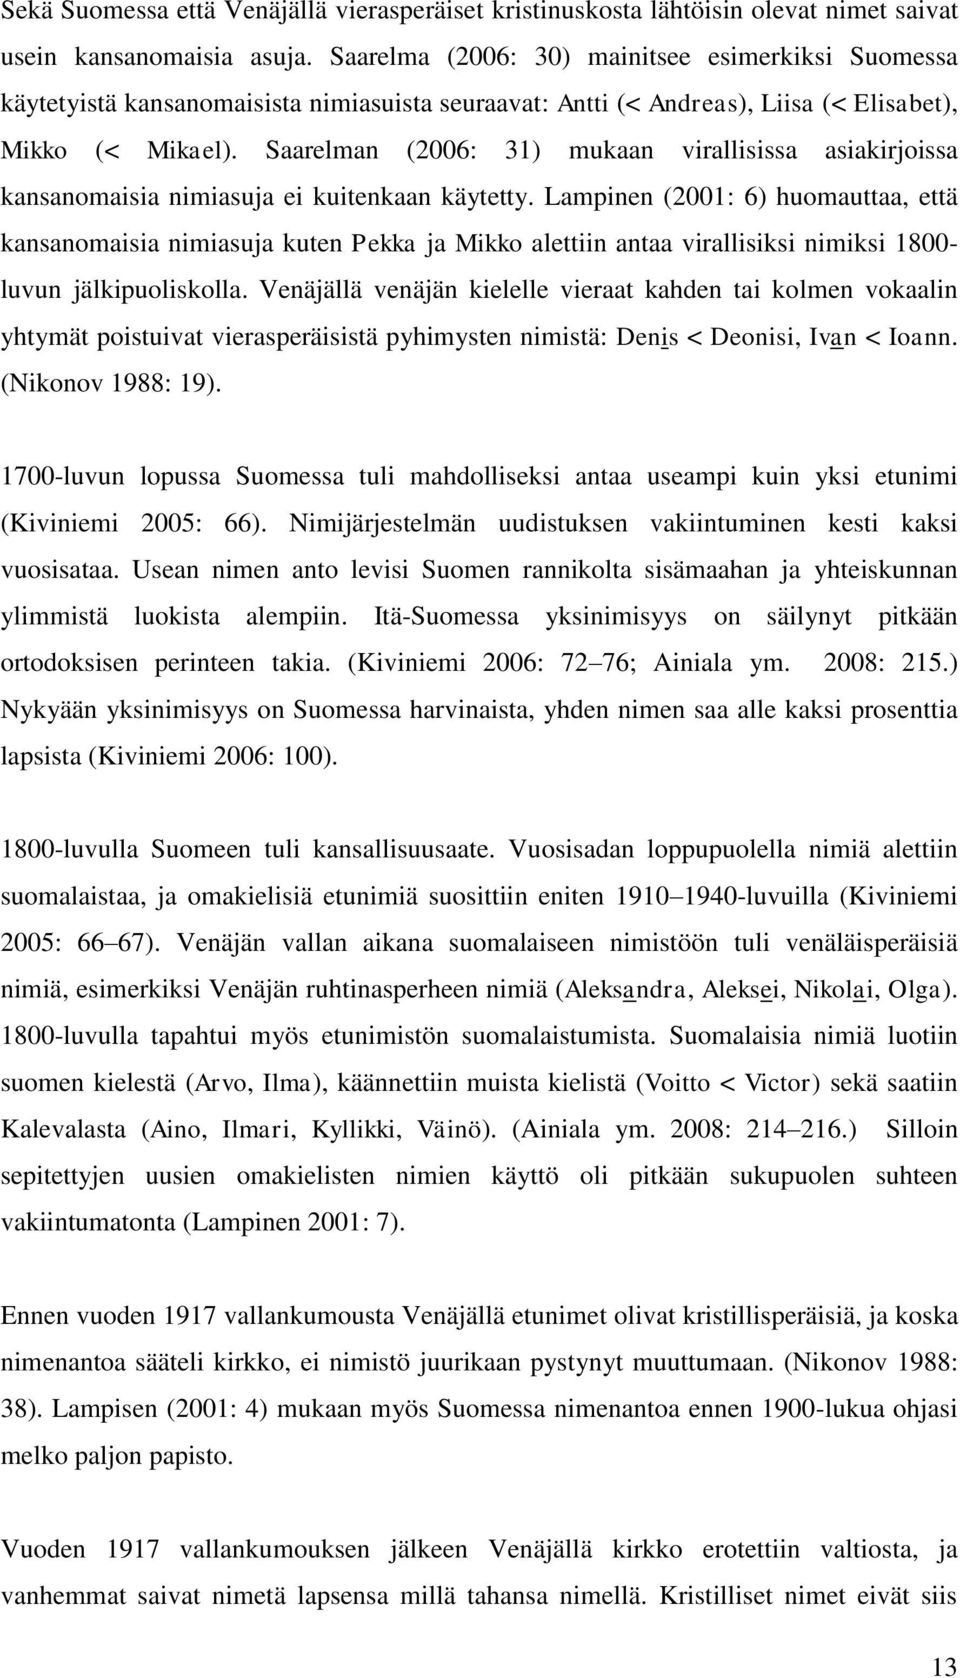 Saarelman (2006: 31) mukaan virallisissa asiakirjoissa kansanomaisia nimiasuja ei kuitenkaan käytetty.